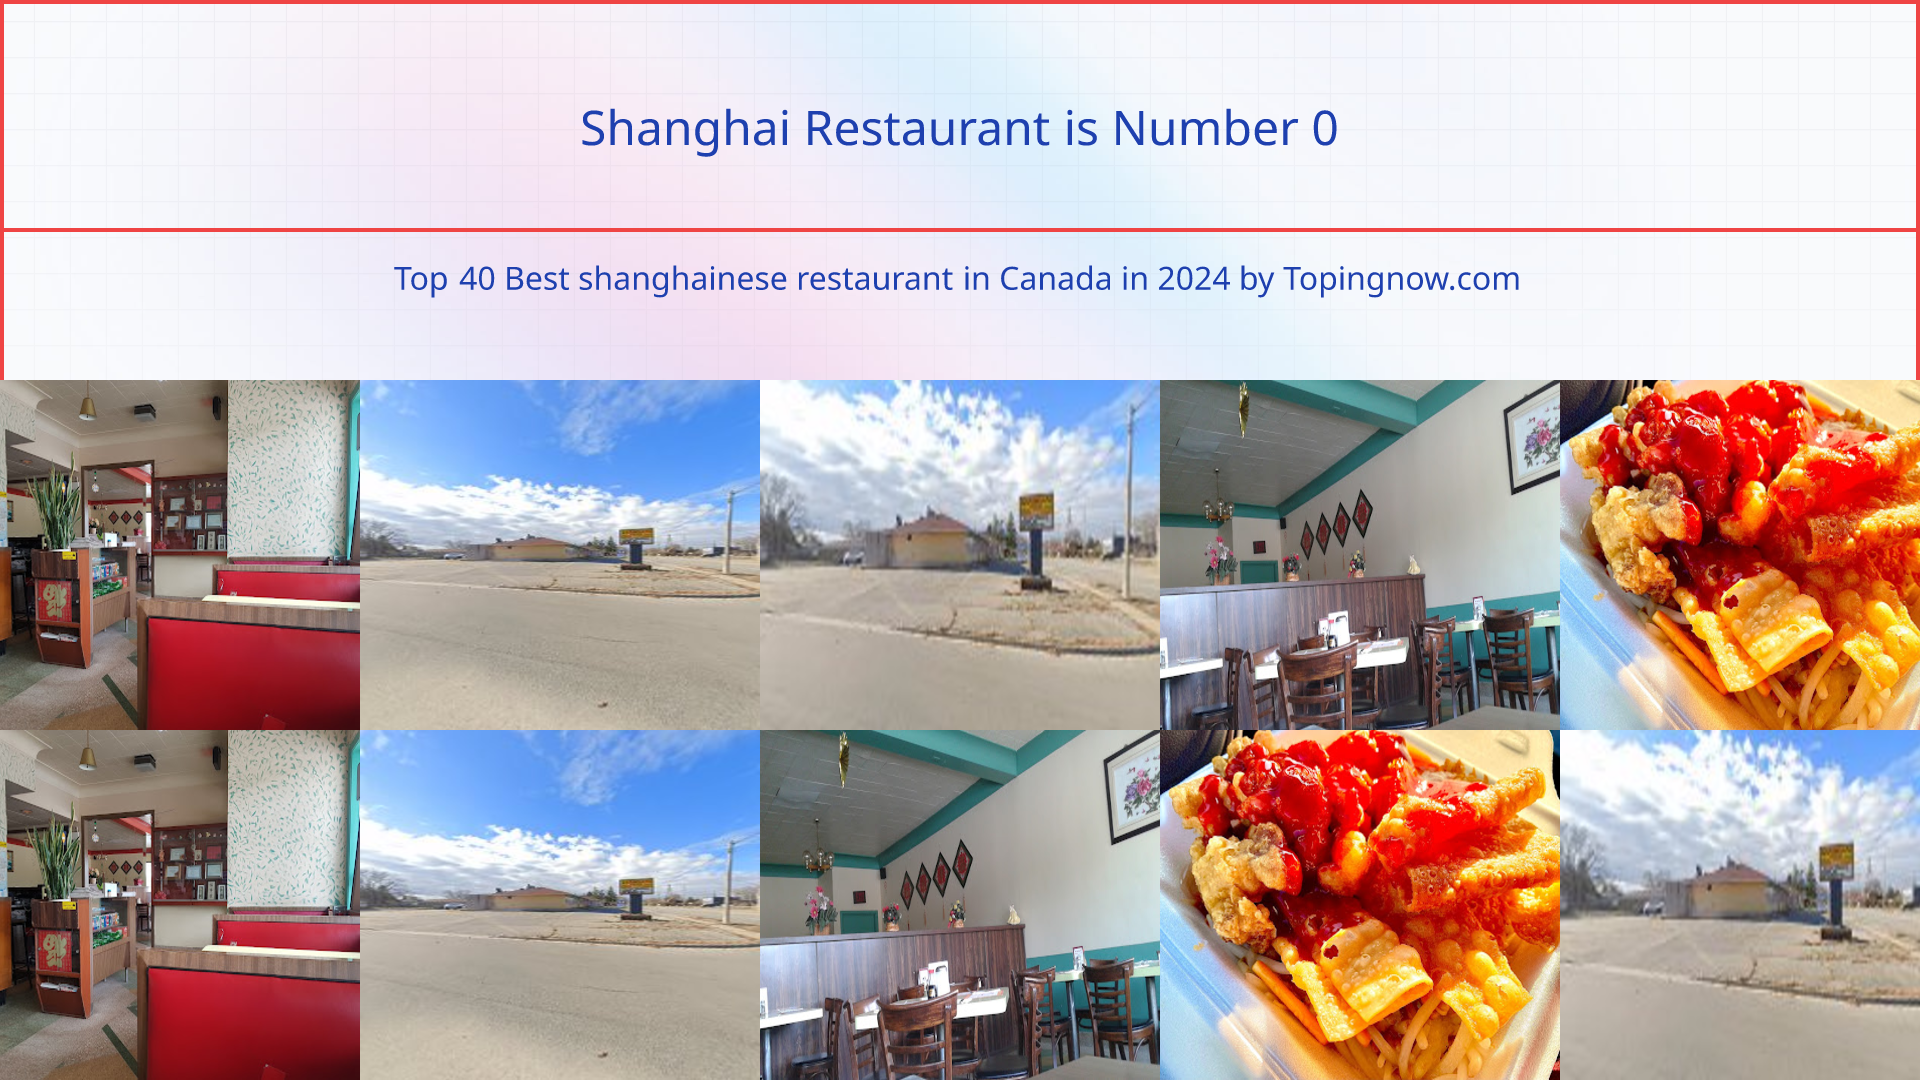 Shanghai Restaurant: Top 40 Best shanghainese restaurant in Canada in 2024